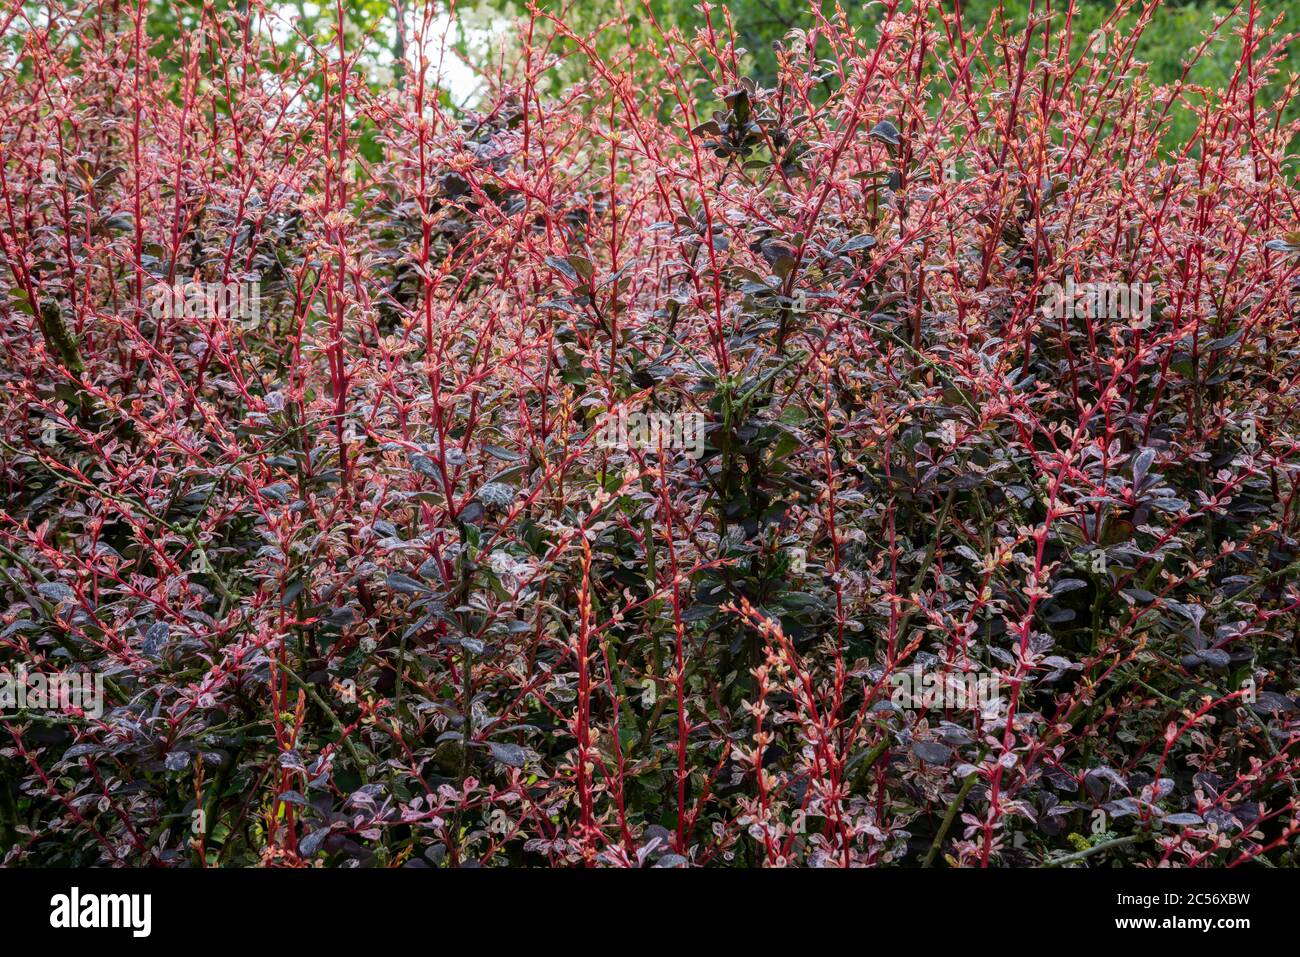 Gros plan BERBERIS thunbergii F. atropurpurea 'Rose Glow' buisson. De nouvelles pousses rouges avec des feuilles pourpres profondes. Banque D'Images